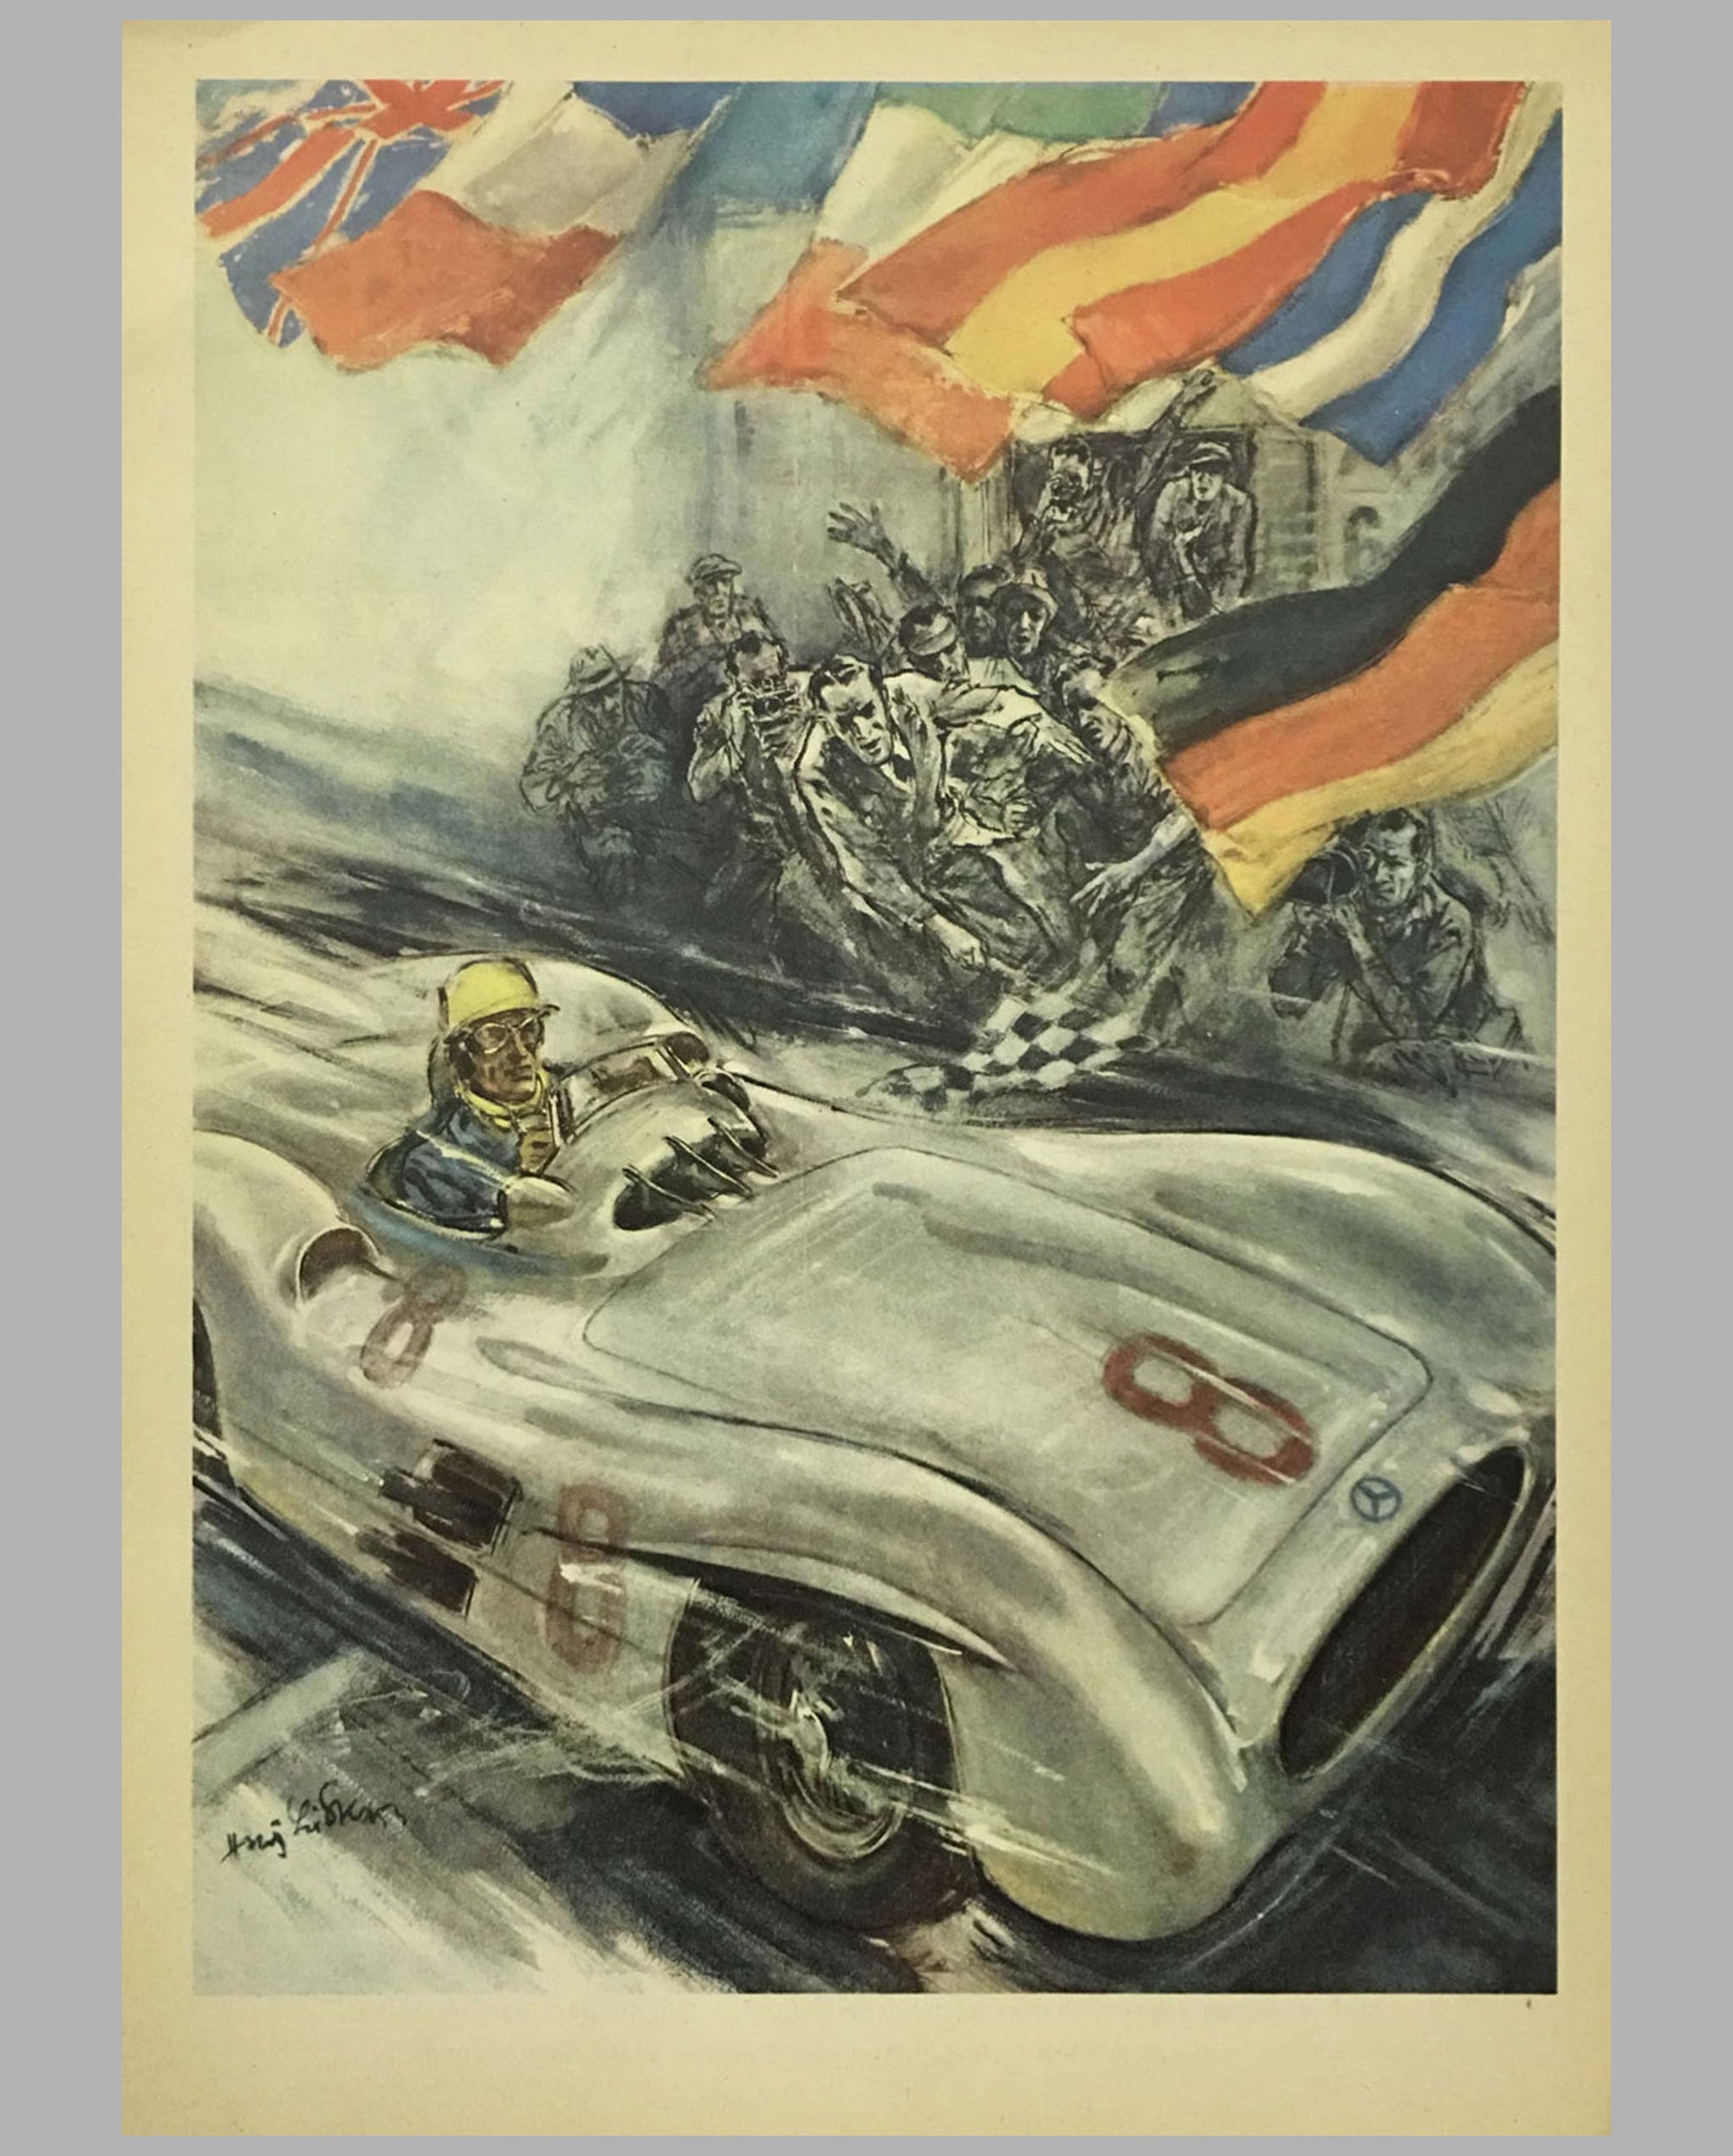 1955 Mercedes Benz original victory poster by Hans Liska